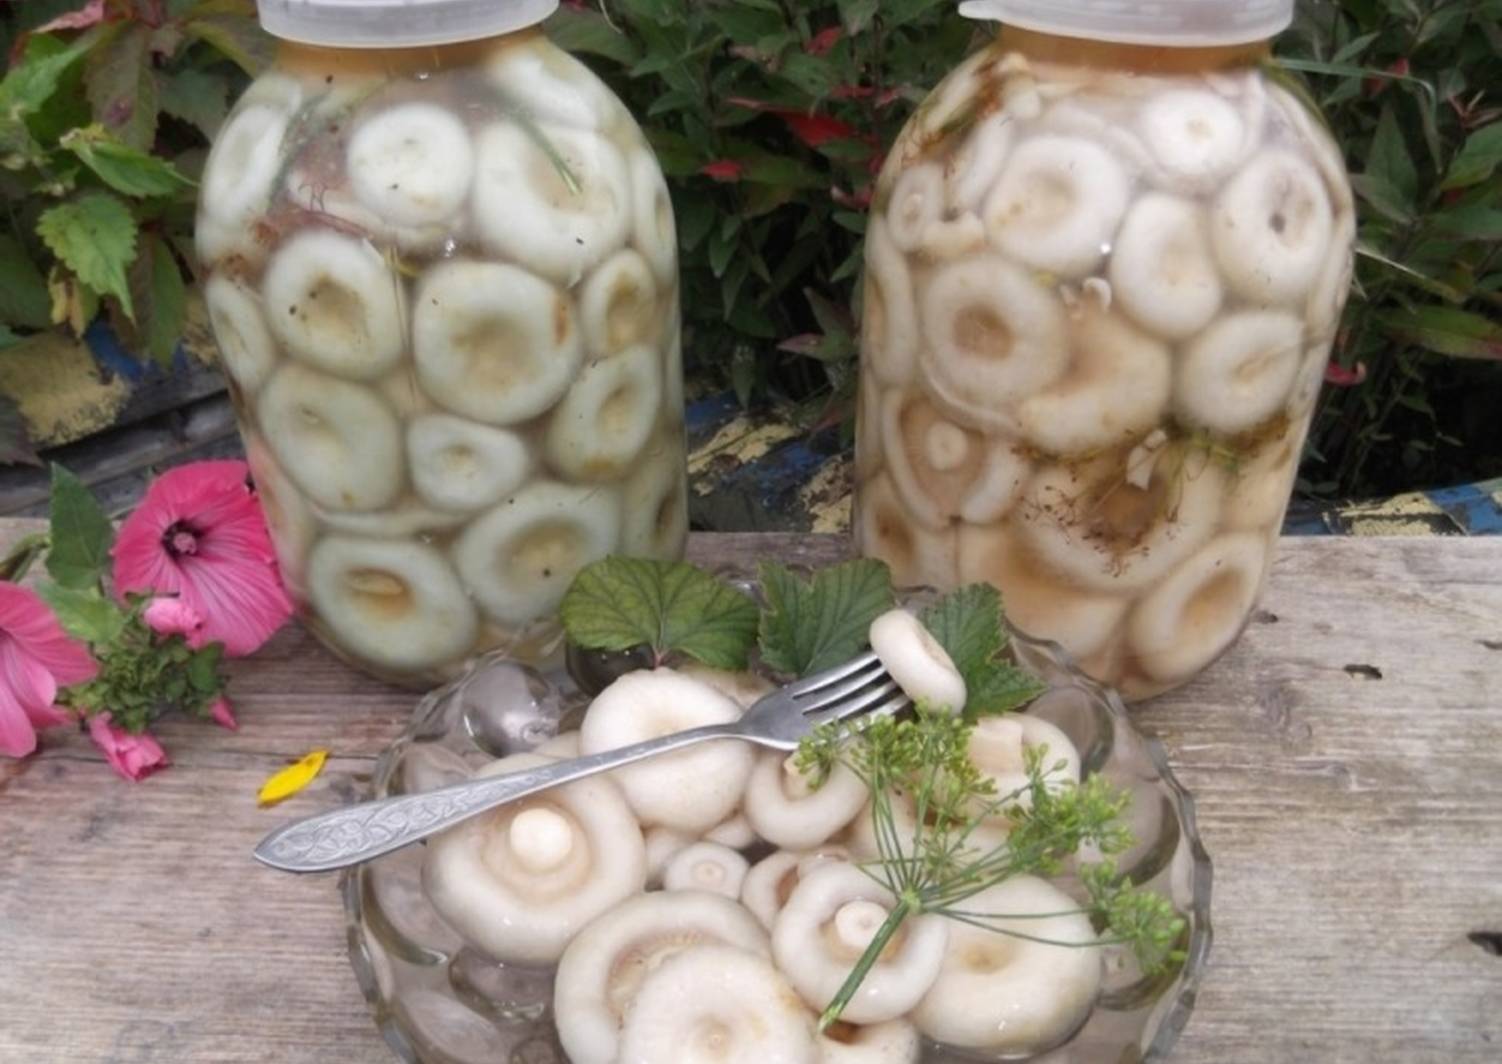 Способы соления грибов на зиму в домашних условиях: фото, простые рецепты, как правильно солить грибы